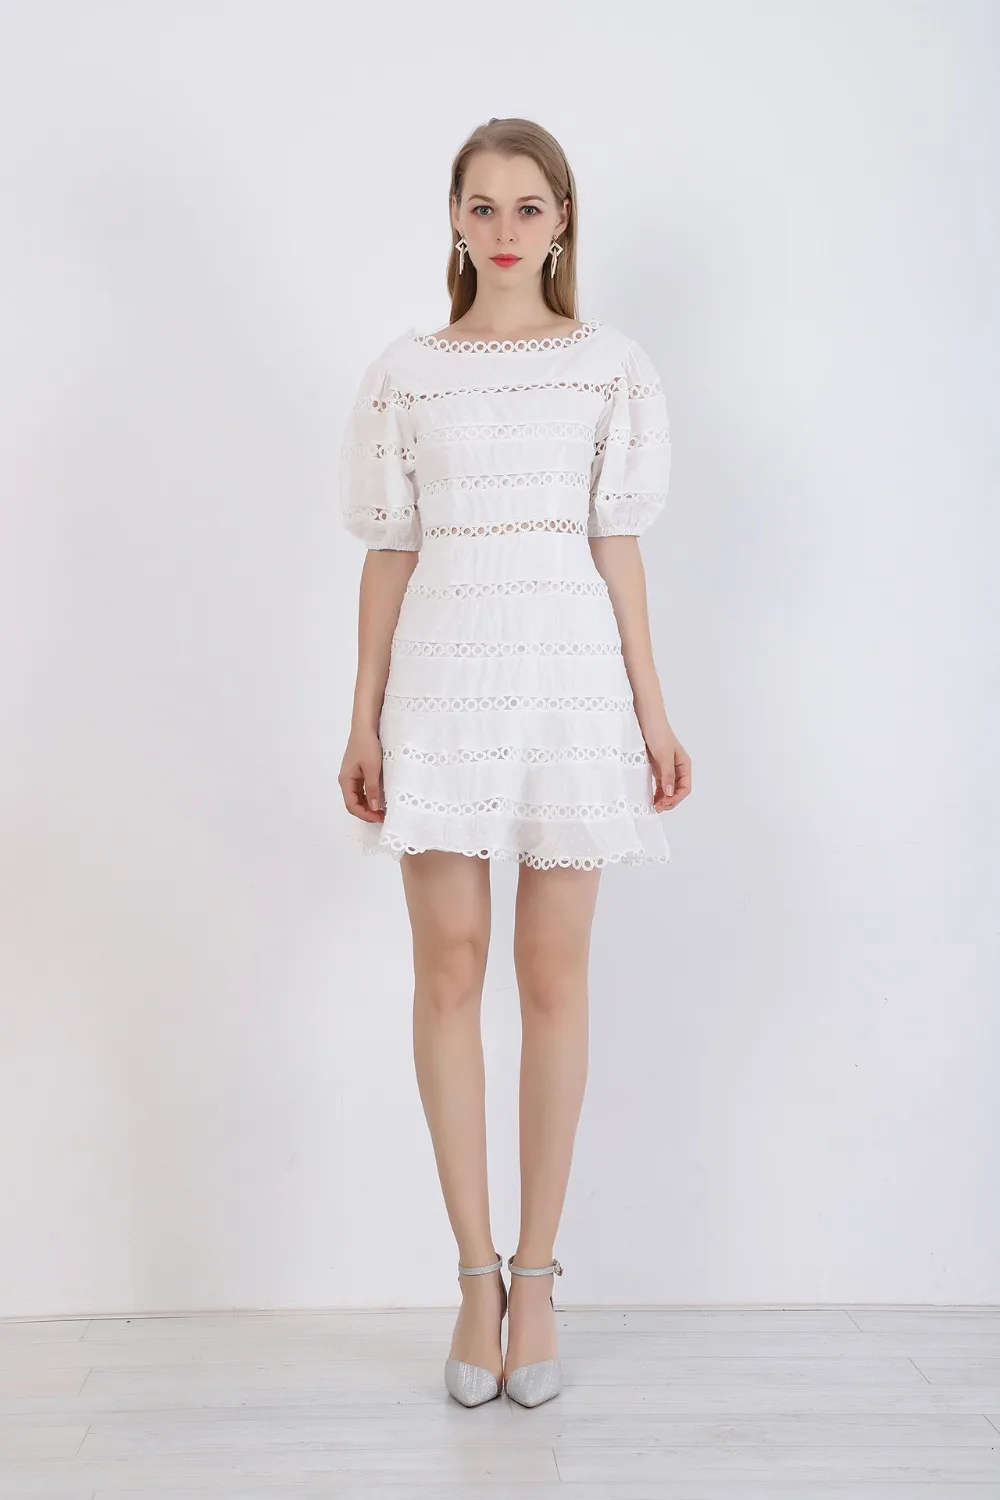 Женское платье с коротким рукавом фонарик, белое платье из высококачественной ткани в стиле пэчворк с кружевом, роскошный подиумный наряд на лето